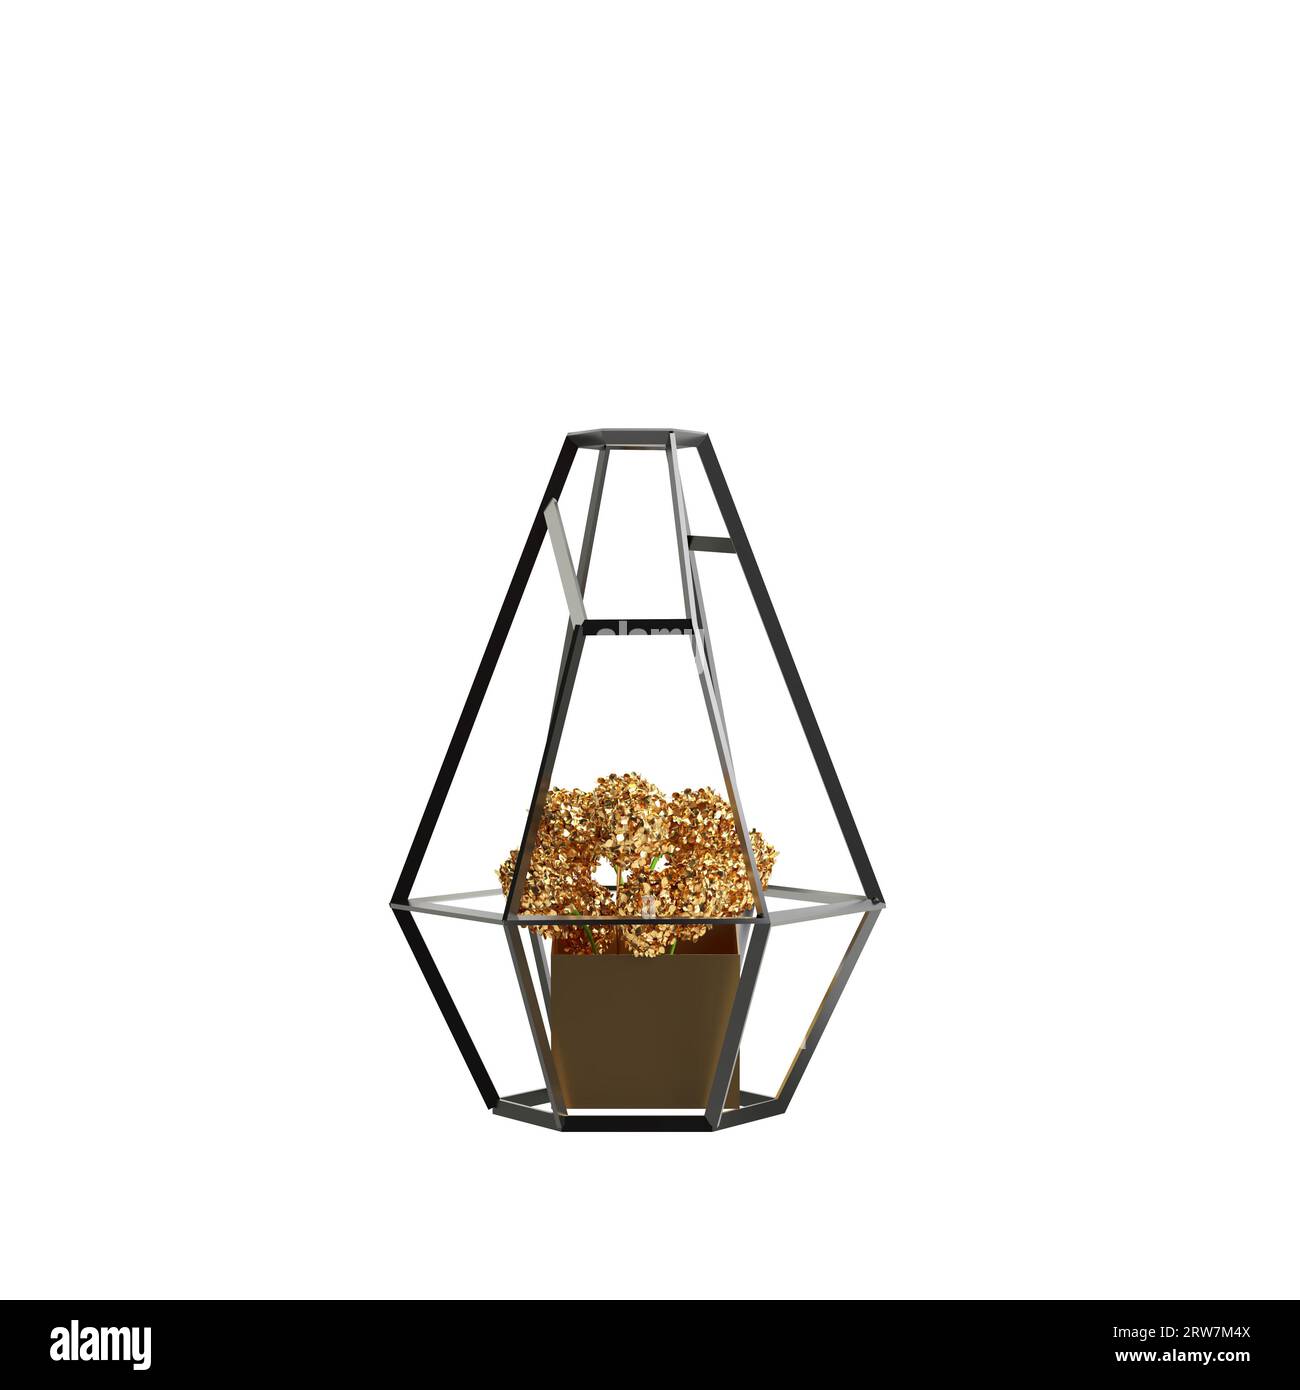 3d illustration d'un vase à fleurs isolé sur fond blanc Banque D'Images